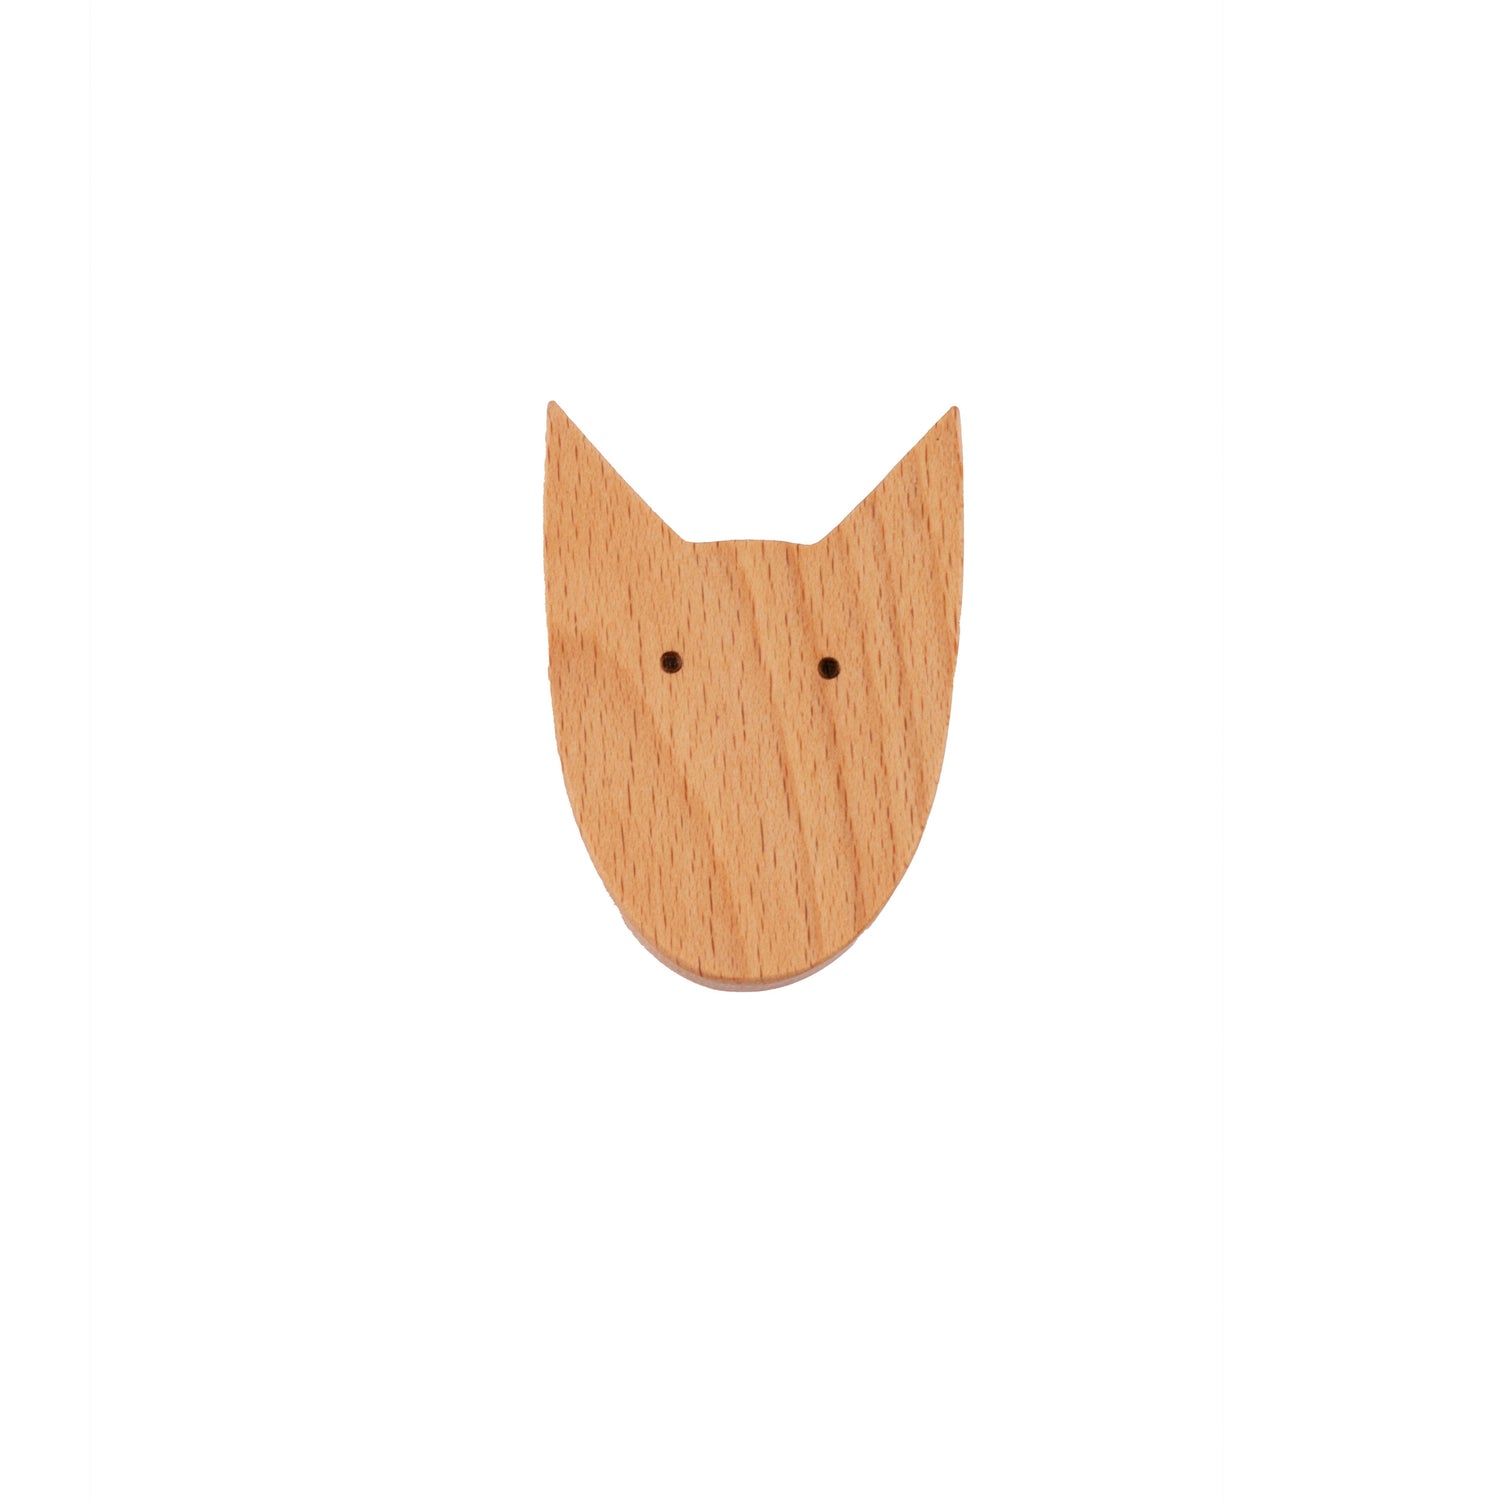 Dog Wooden Knob Hook 70mm / Beige / Wood - M A N T A R A